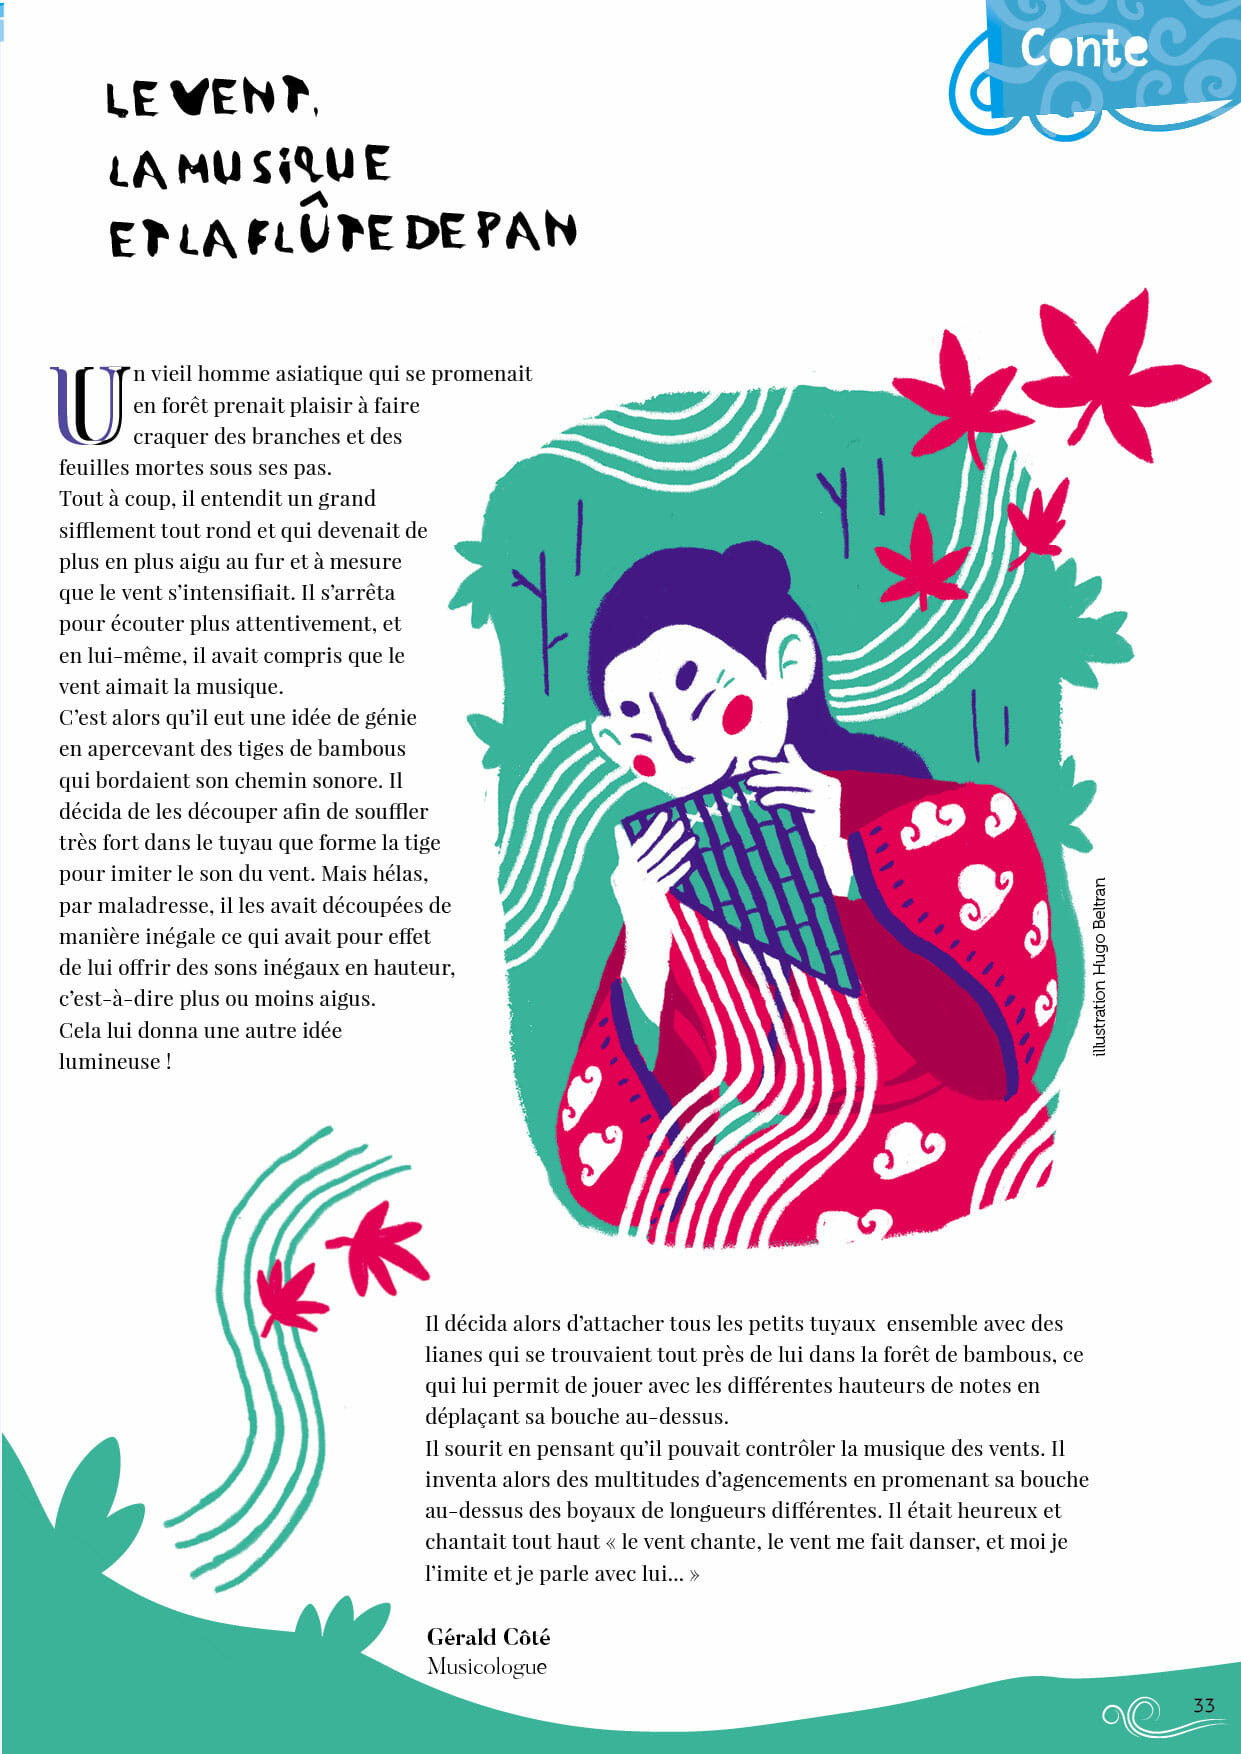 LES PRÉCÉDENTES ÉDITIONS Plum magazine 3